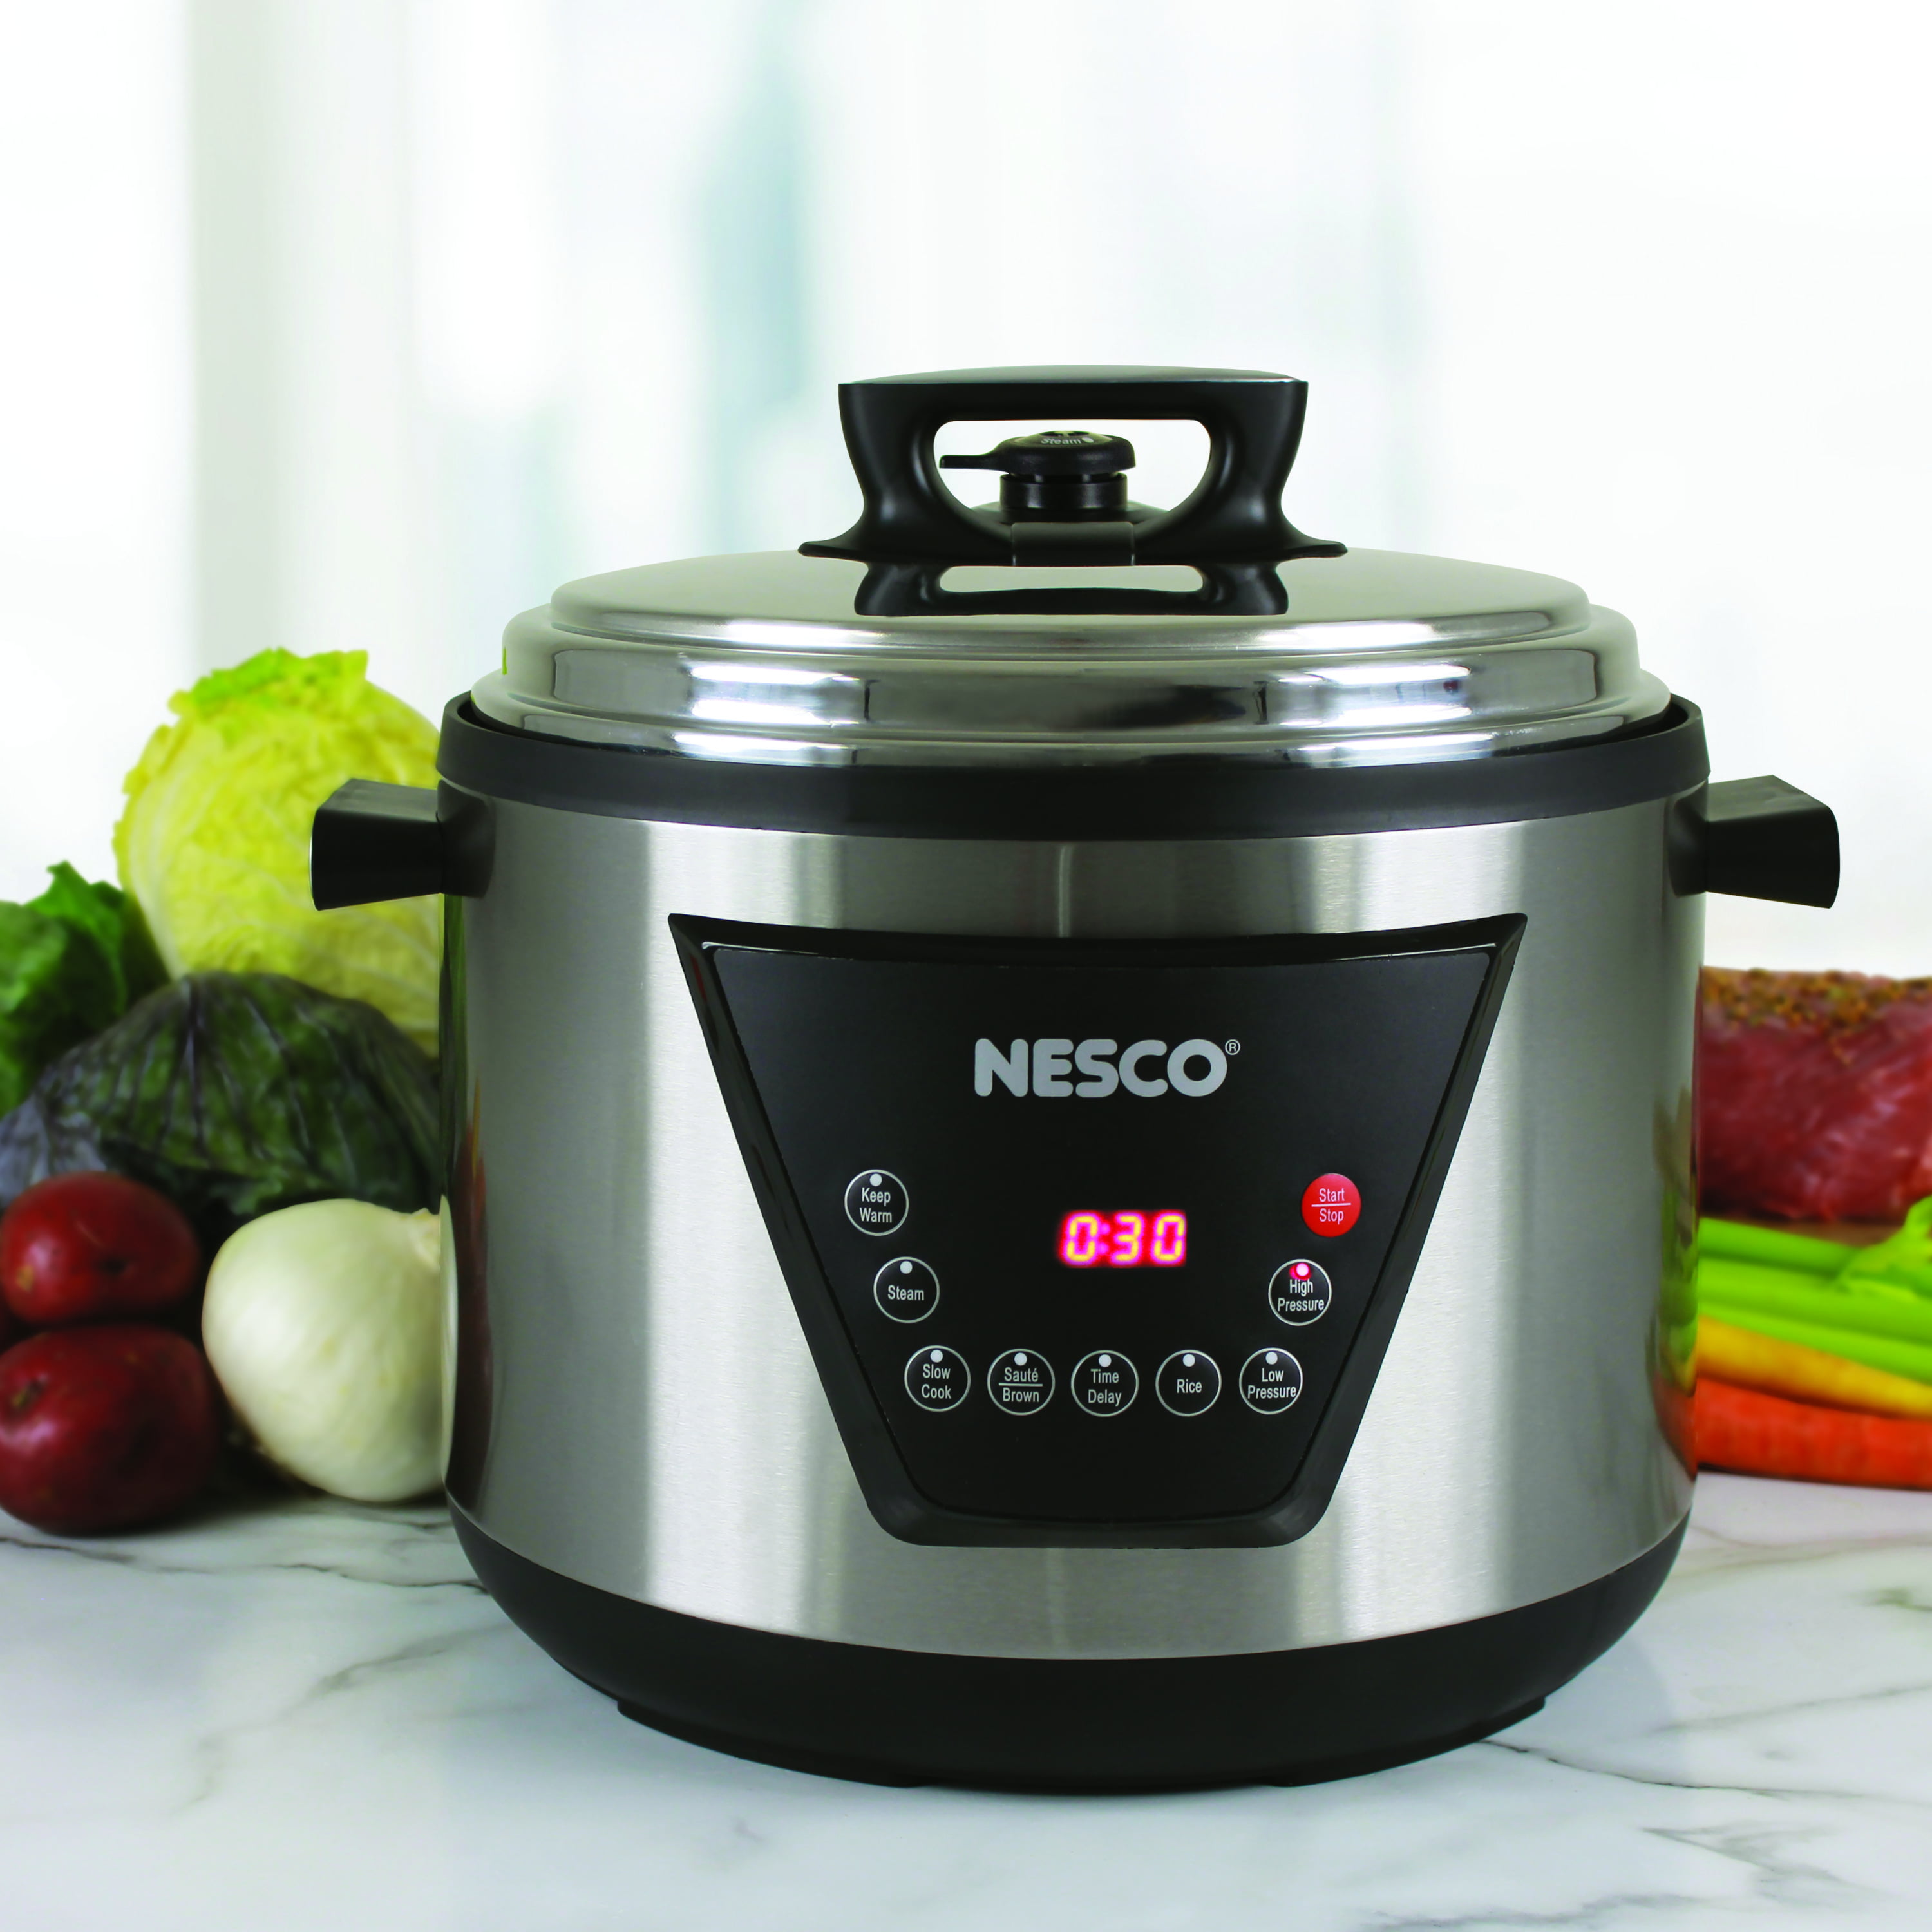 Nesco 11 L Pressure Cooker Price in India - Buy Nesco 11 L Pressure Cooker  online at